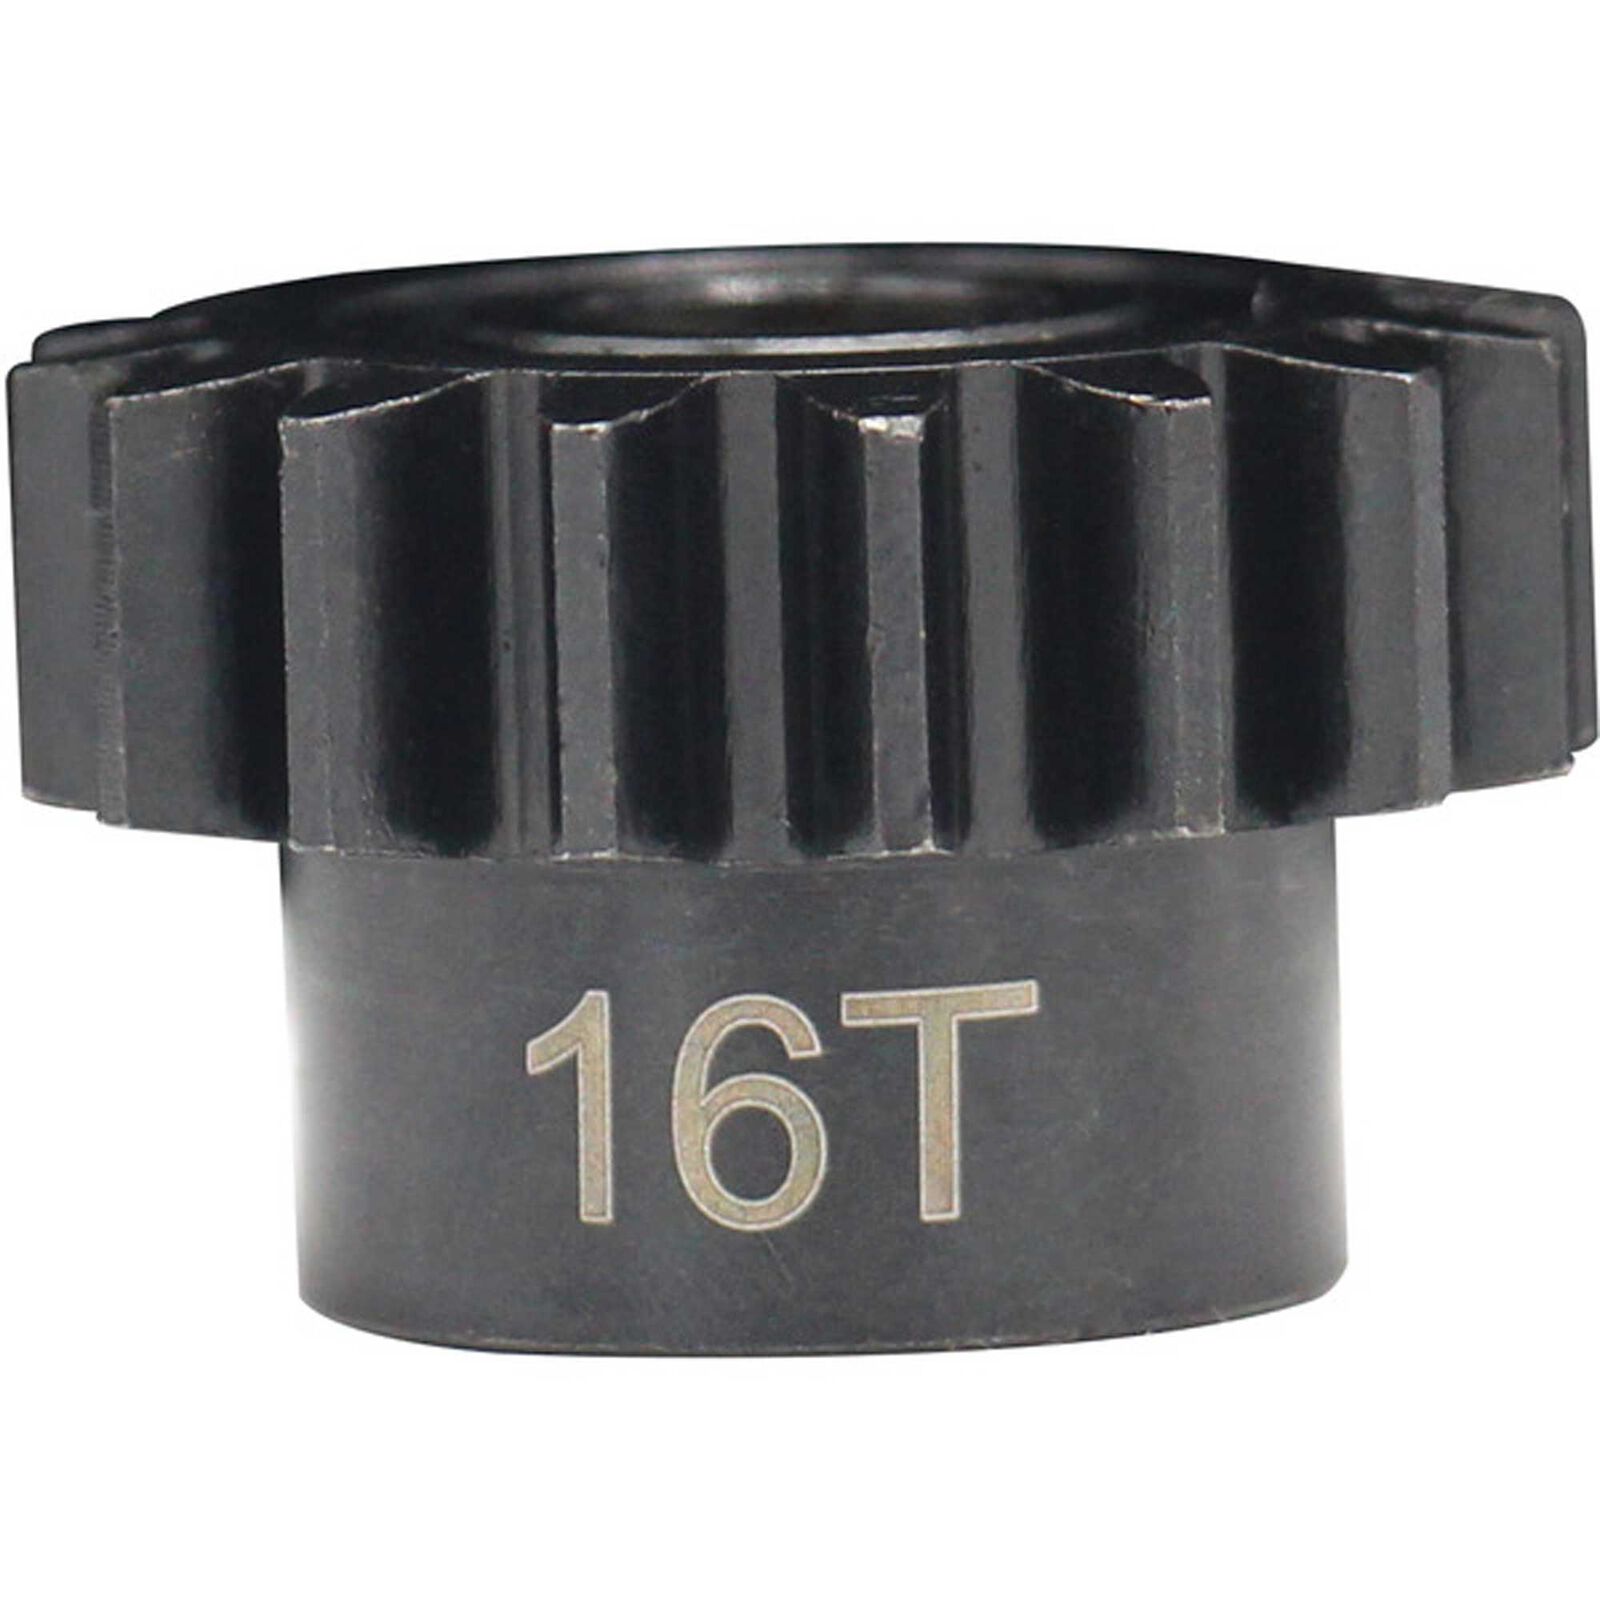 16t Mod 1.5 Hardened Steel Pinion Gear 8mm Bore